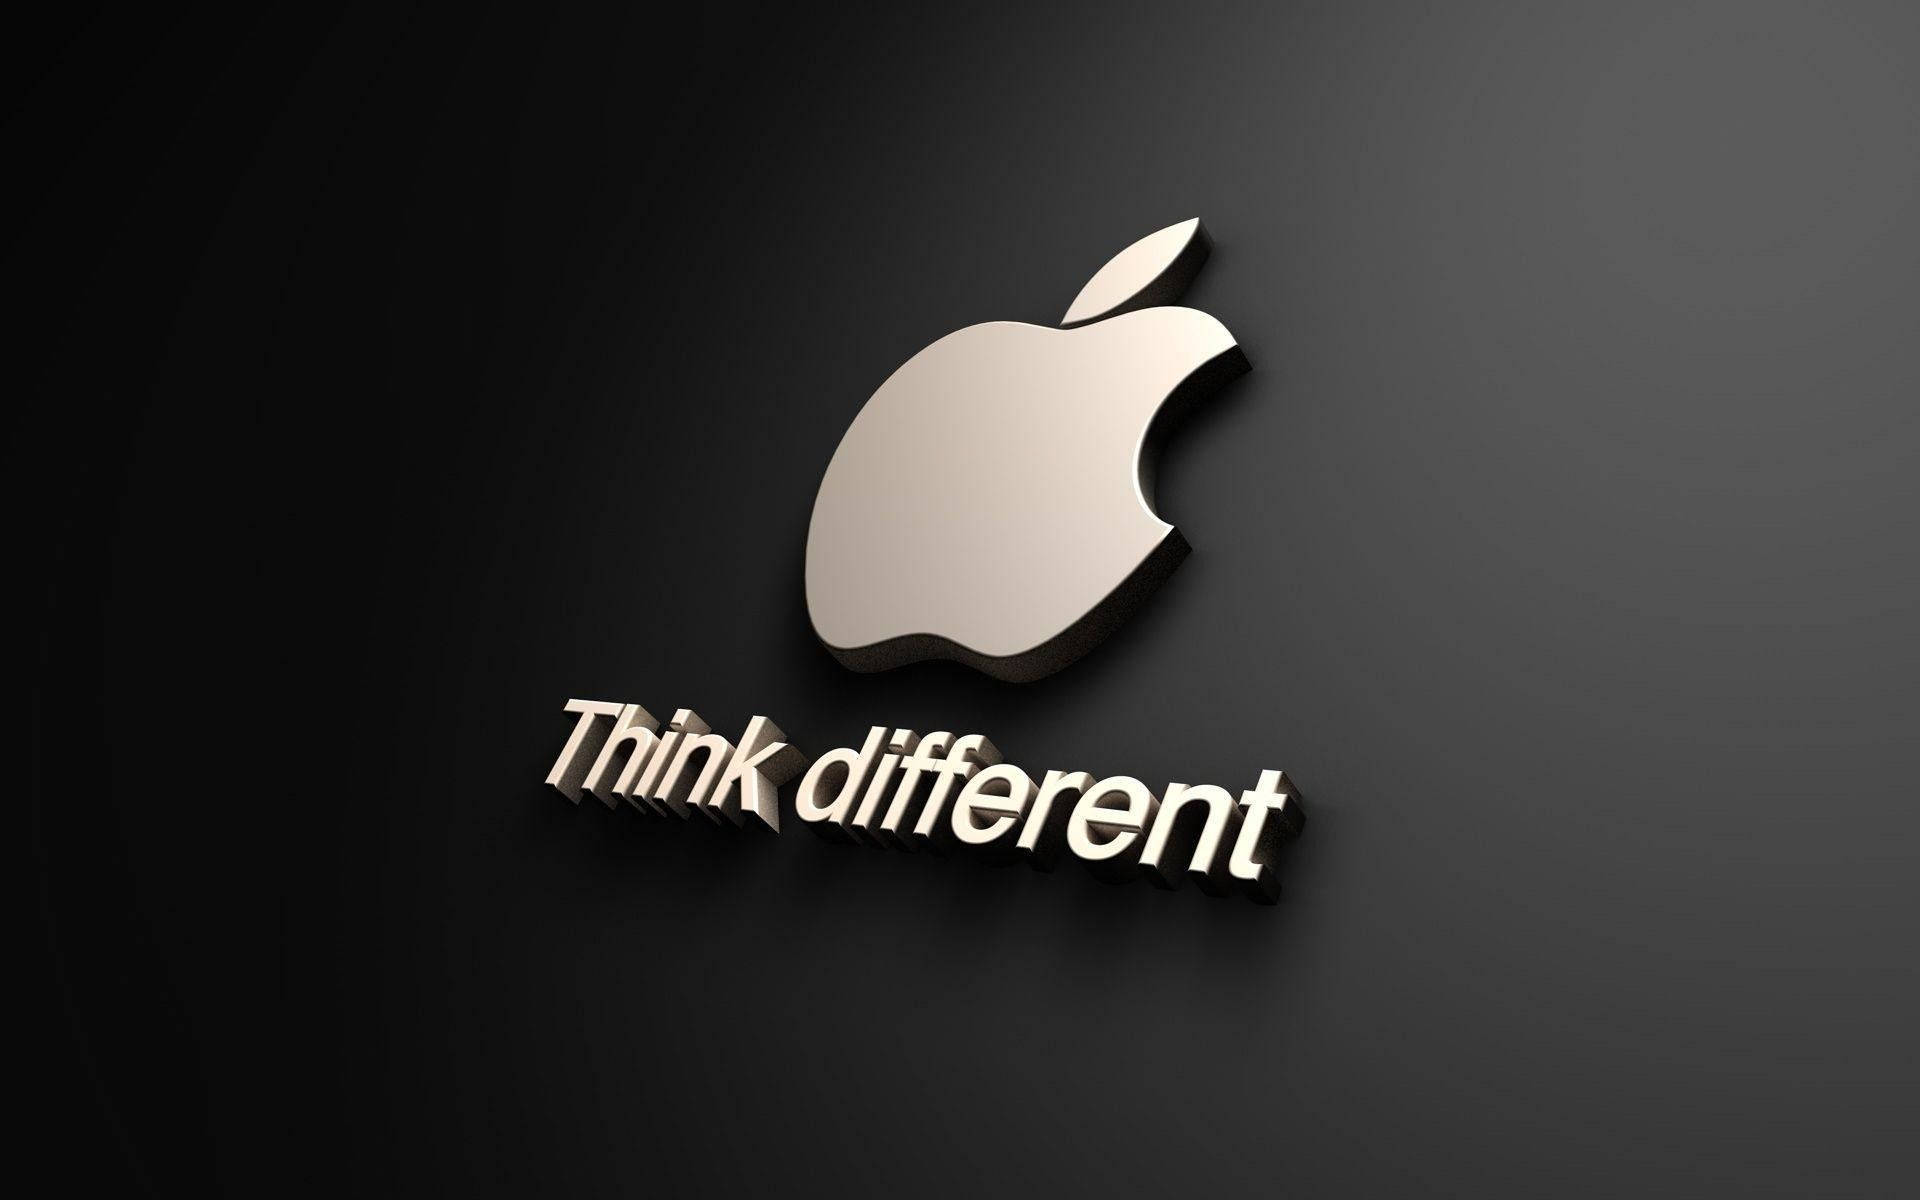 Apple tænker anderledes logo tapet Wallpaper